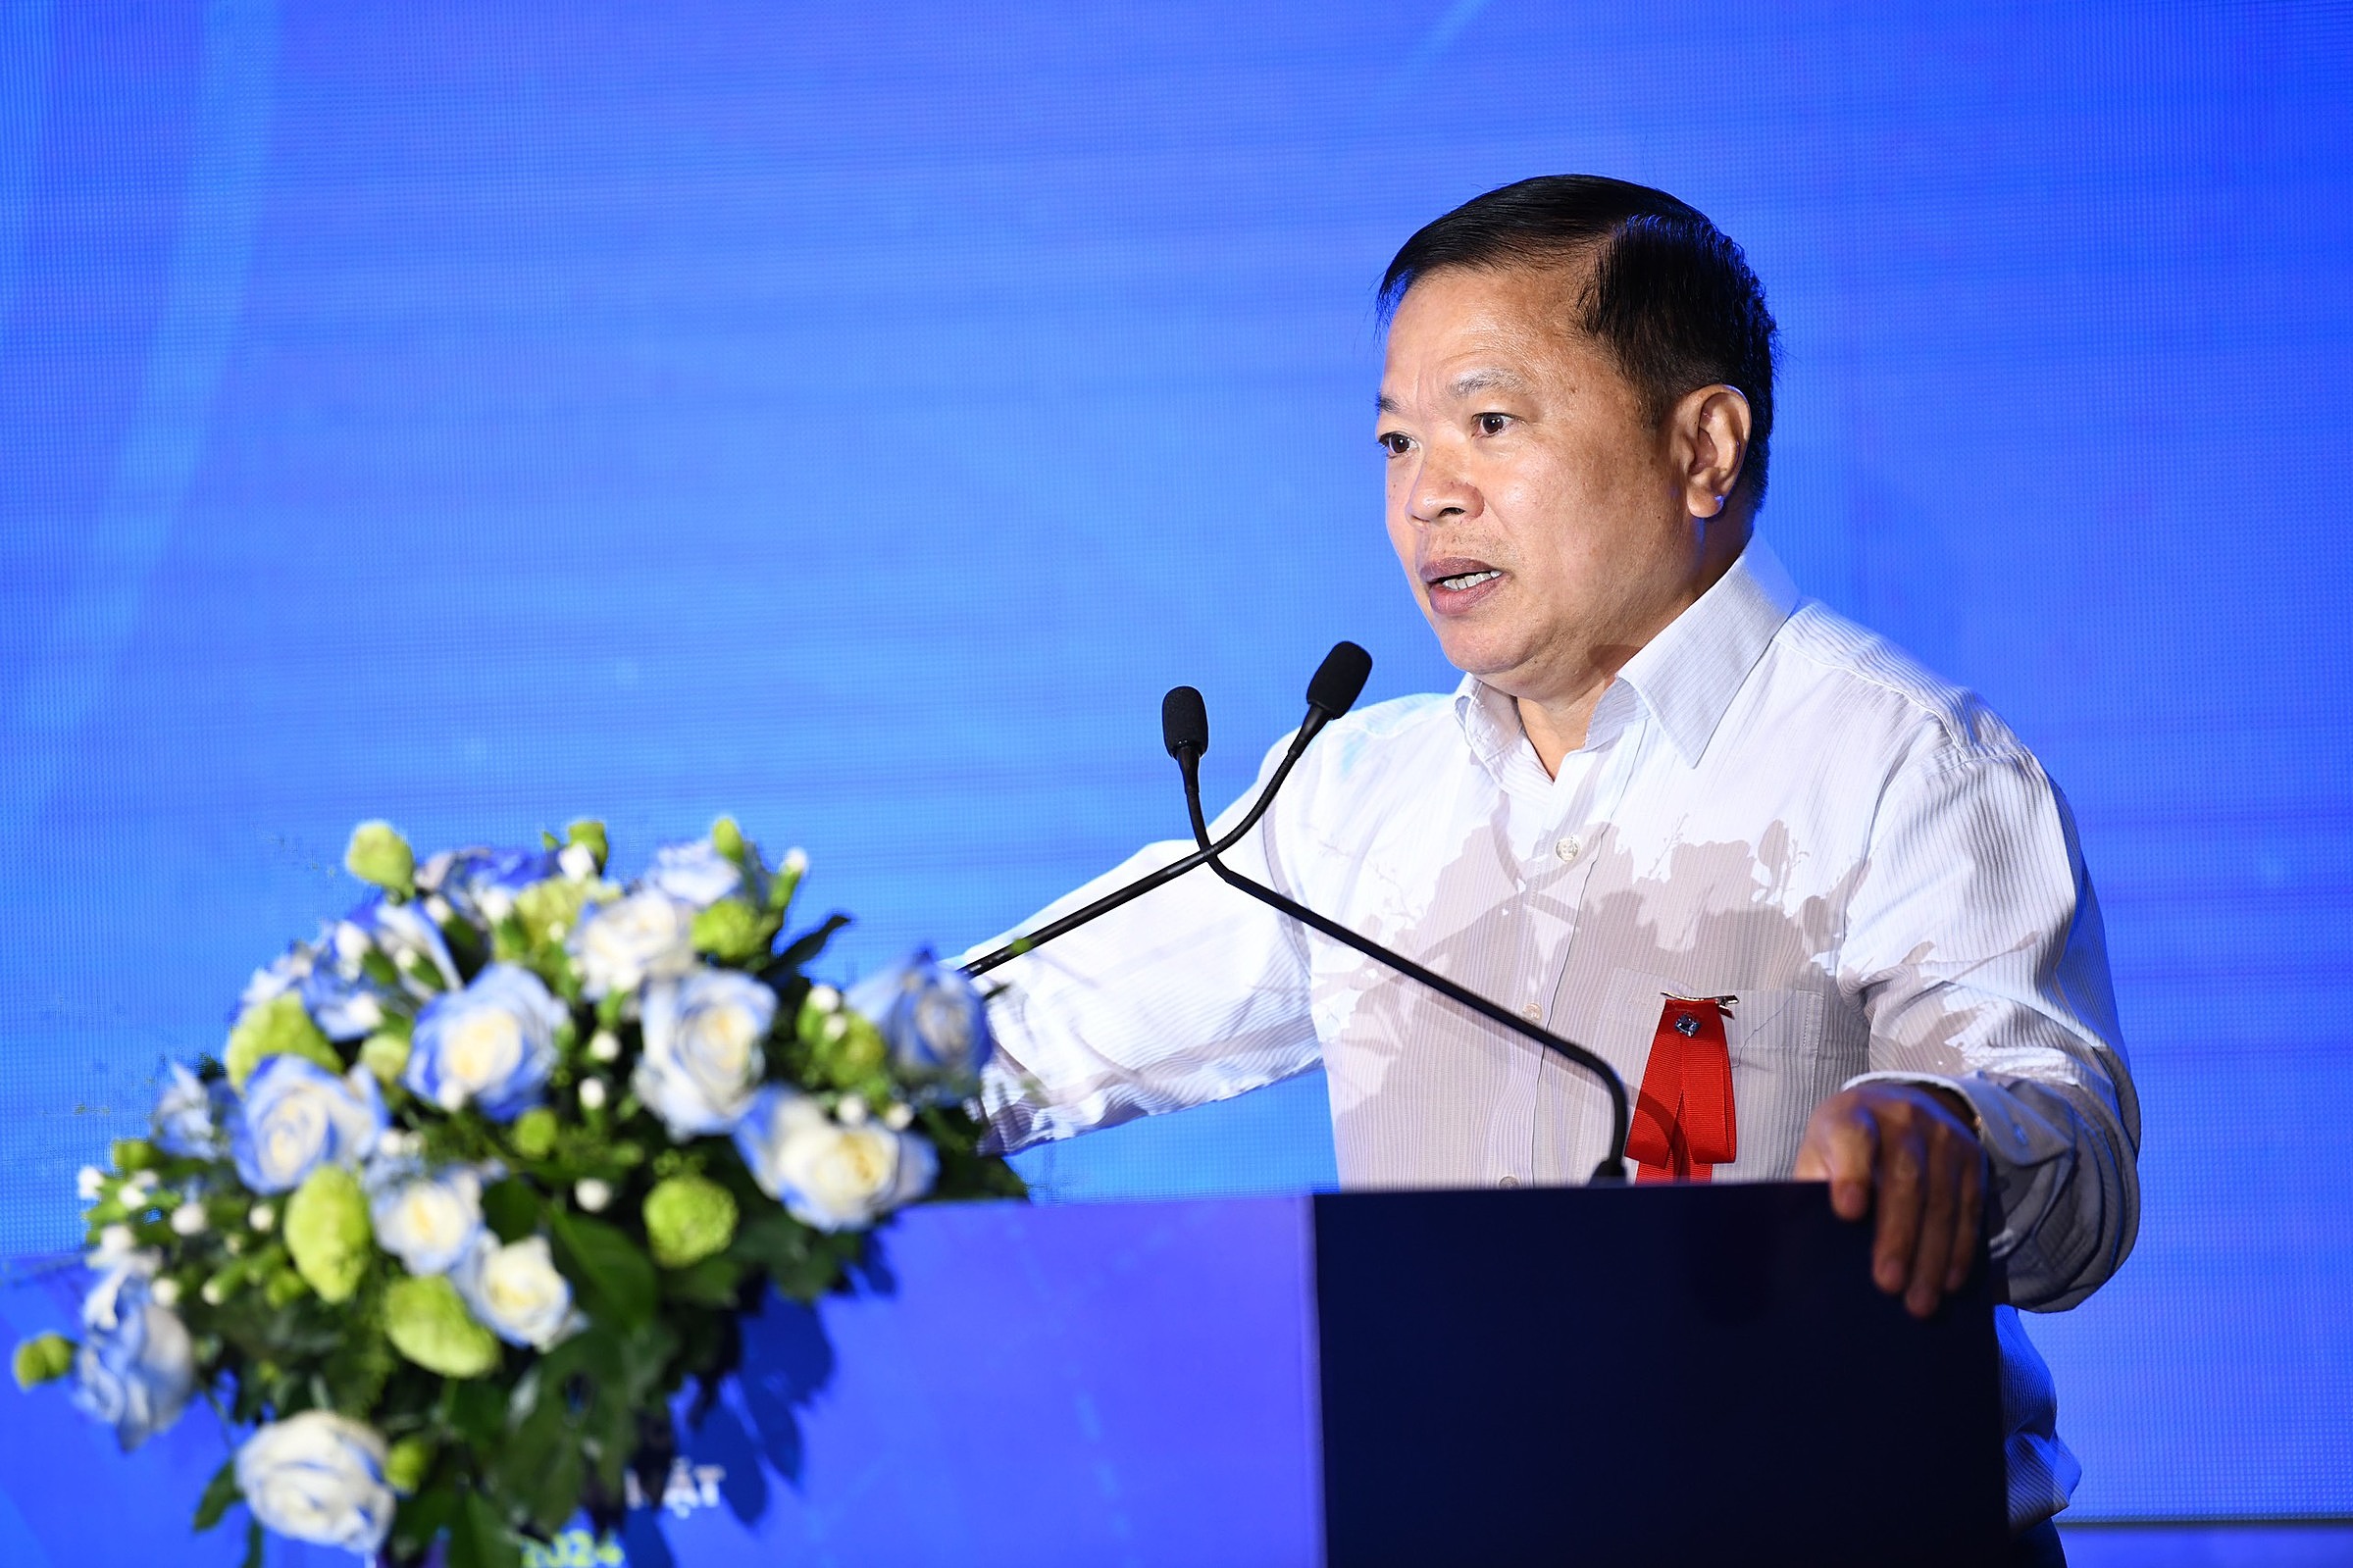 Nguyễn Văn Giang, Phó Cục trưởng Cục An ninh mạng và phòng chống tội phạm sử dụng công nghệ cao (Bộ Công an), trong sự kiện Không tiền mặt ngày 14/6, tại TP HCM. Ảnh: Quang Định